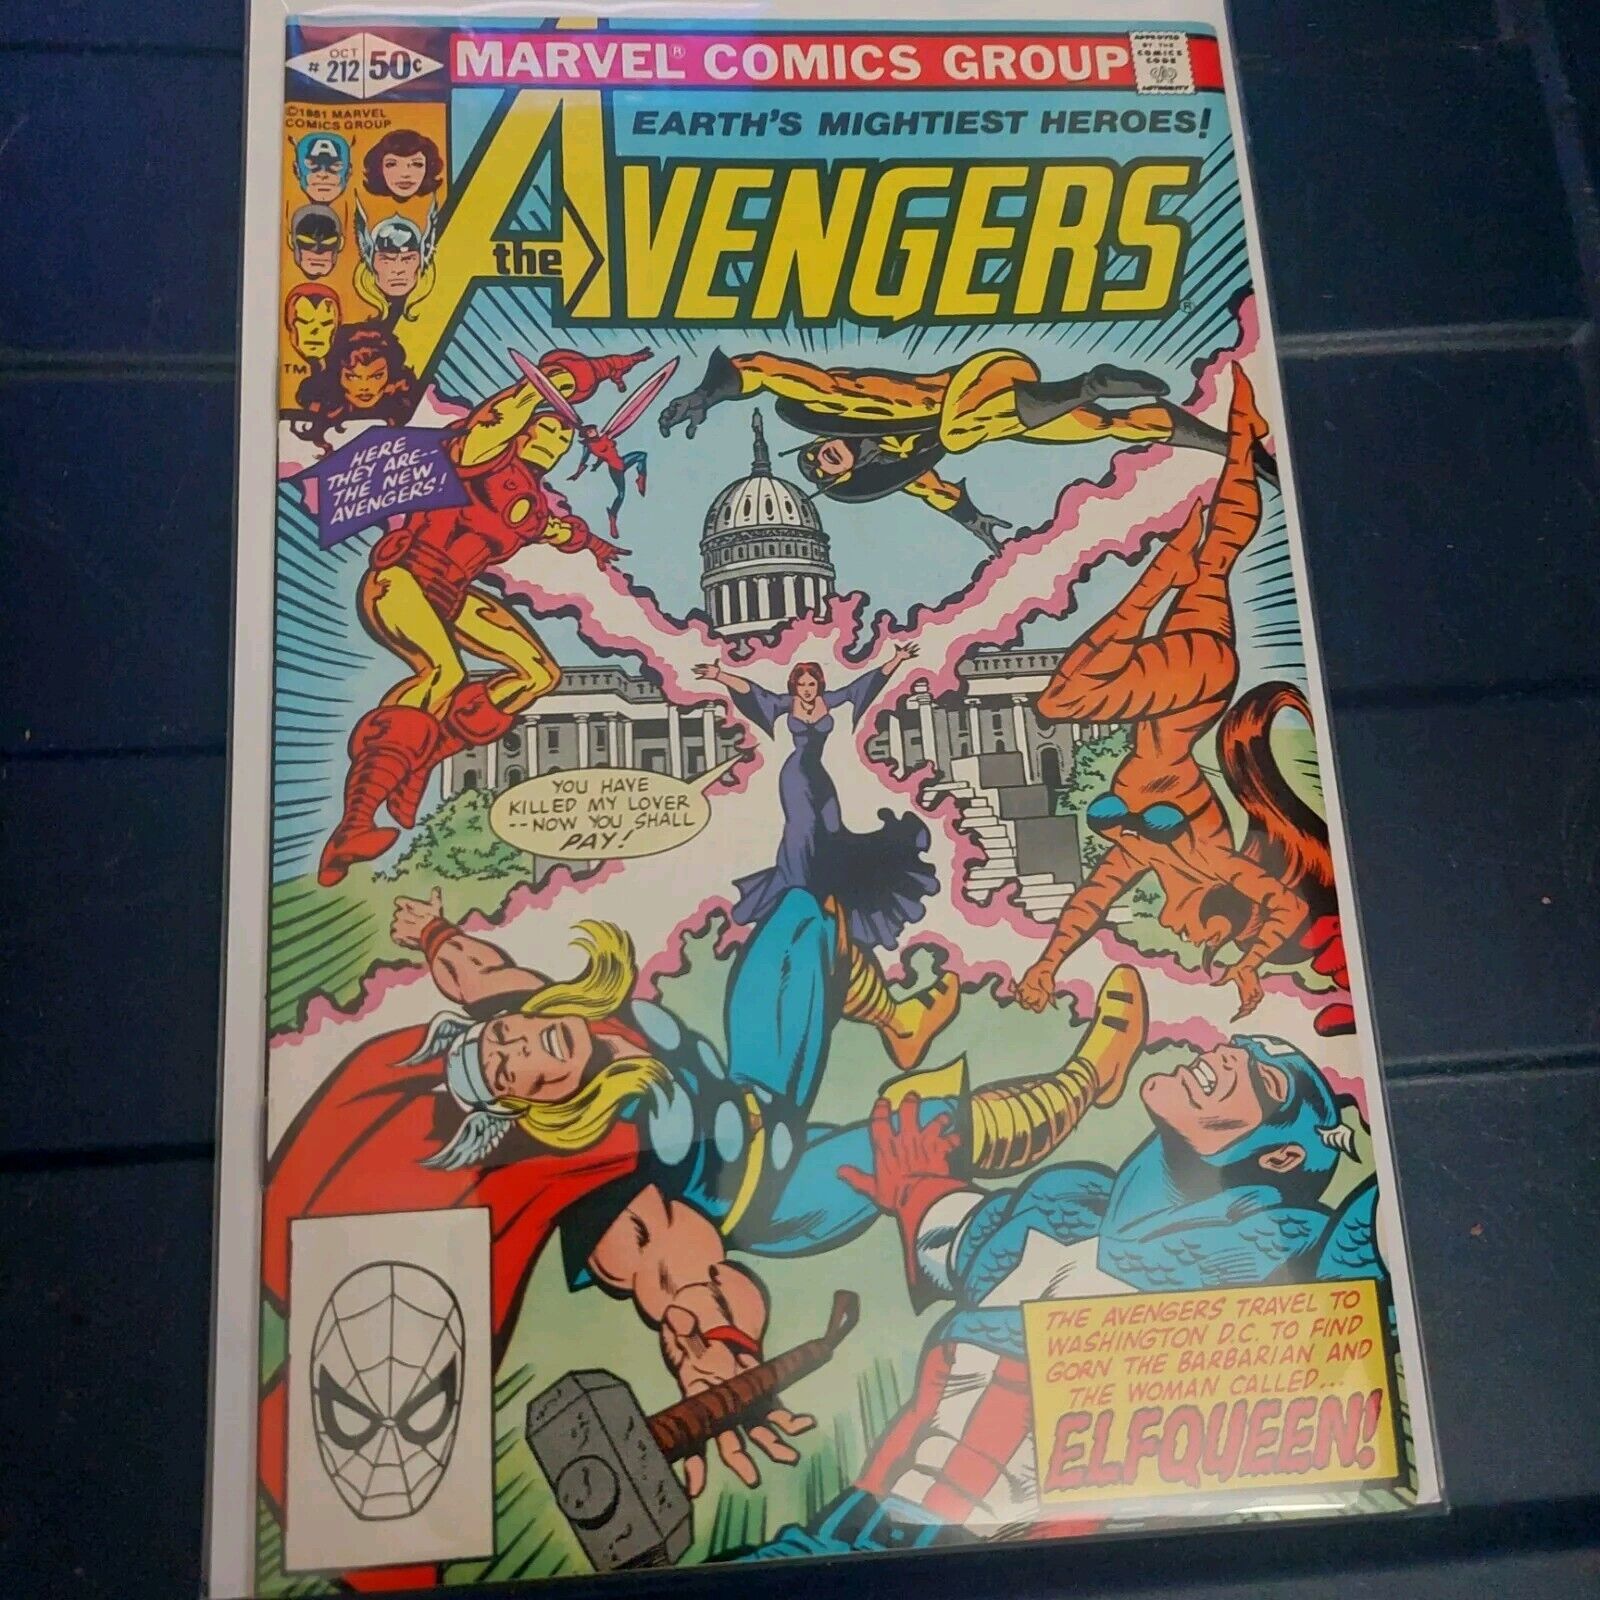 Marvel Comics The Avengers #212 October 1981 Kupperberg Art ELFQUEEN VF/VF+